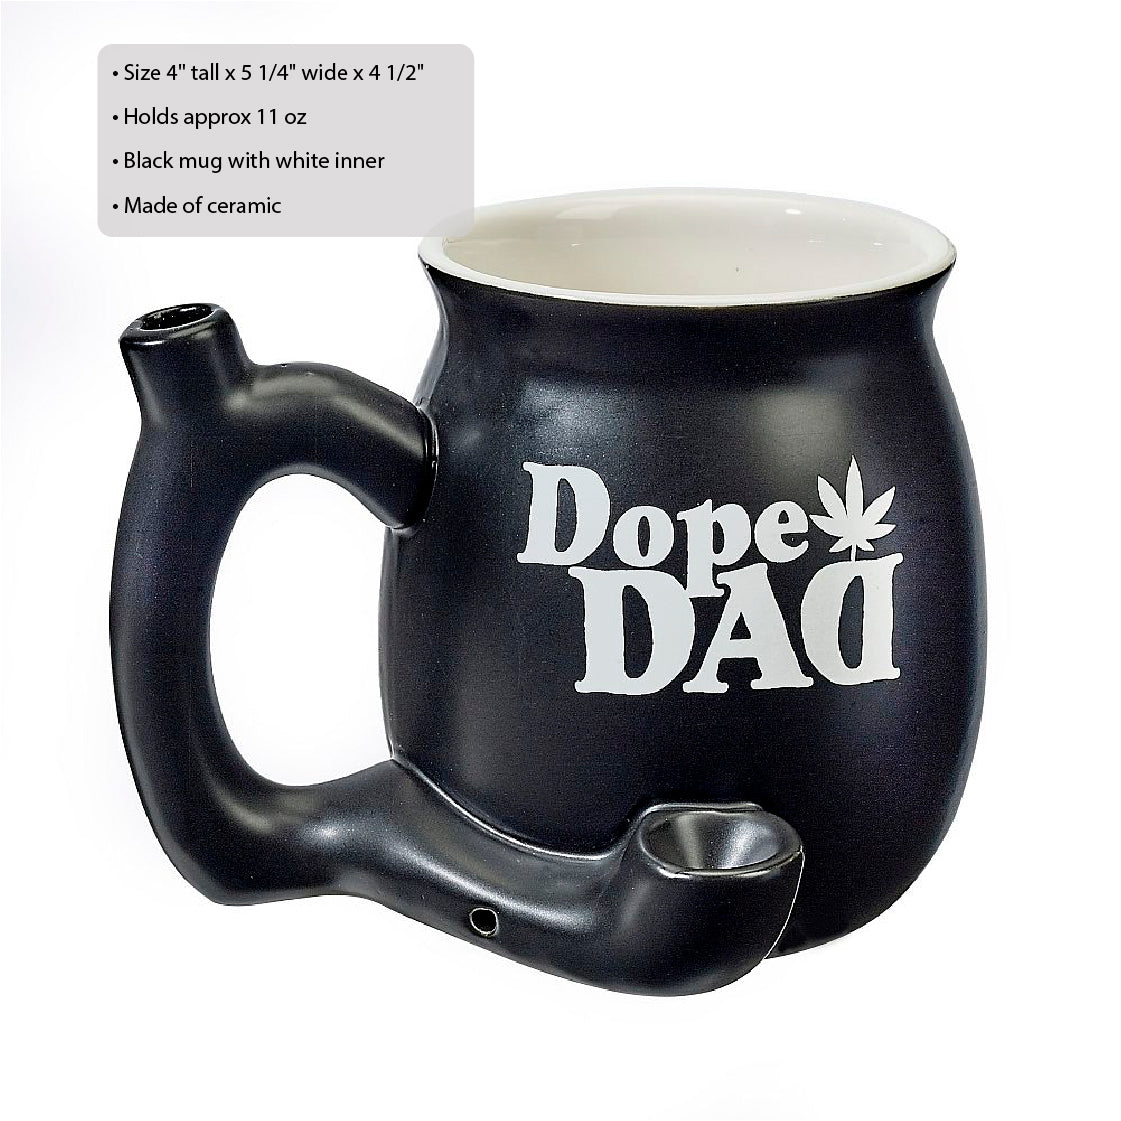 Stoner Dad Mug Pipe